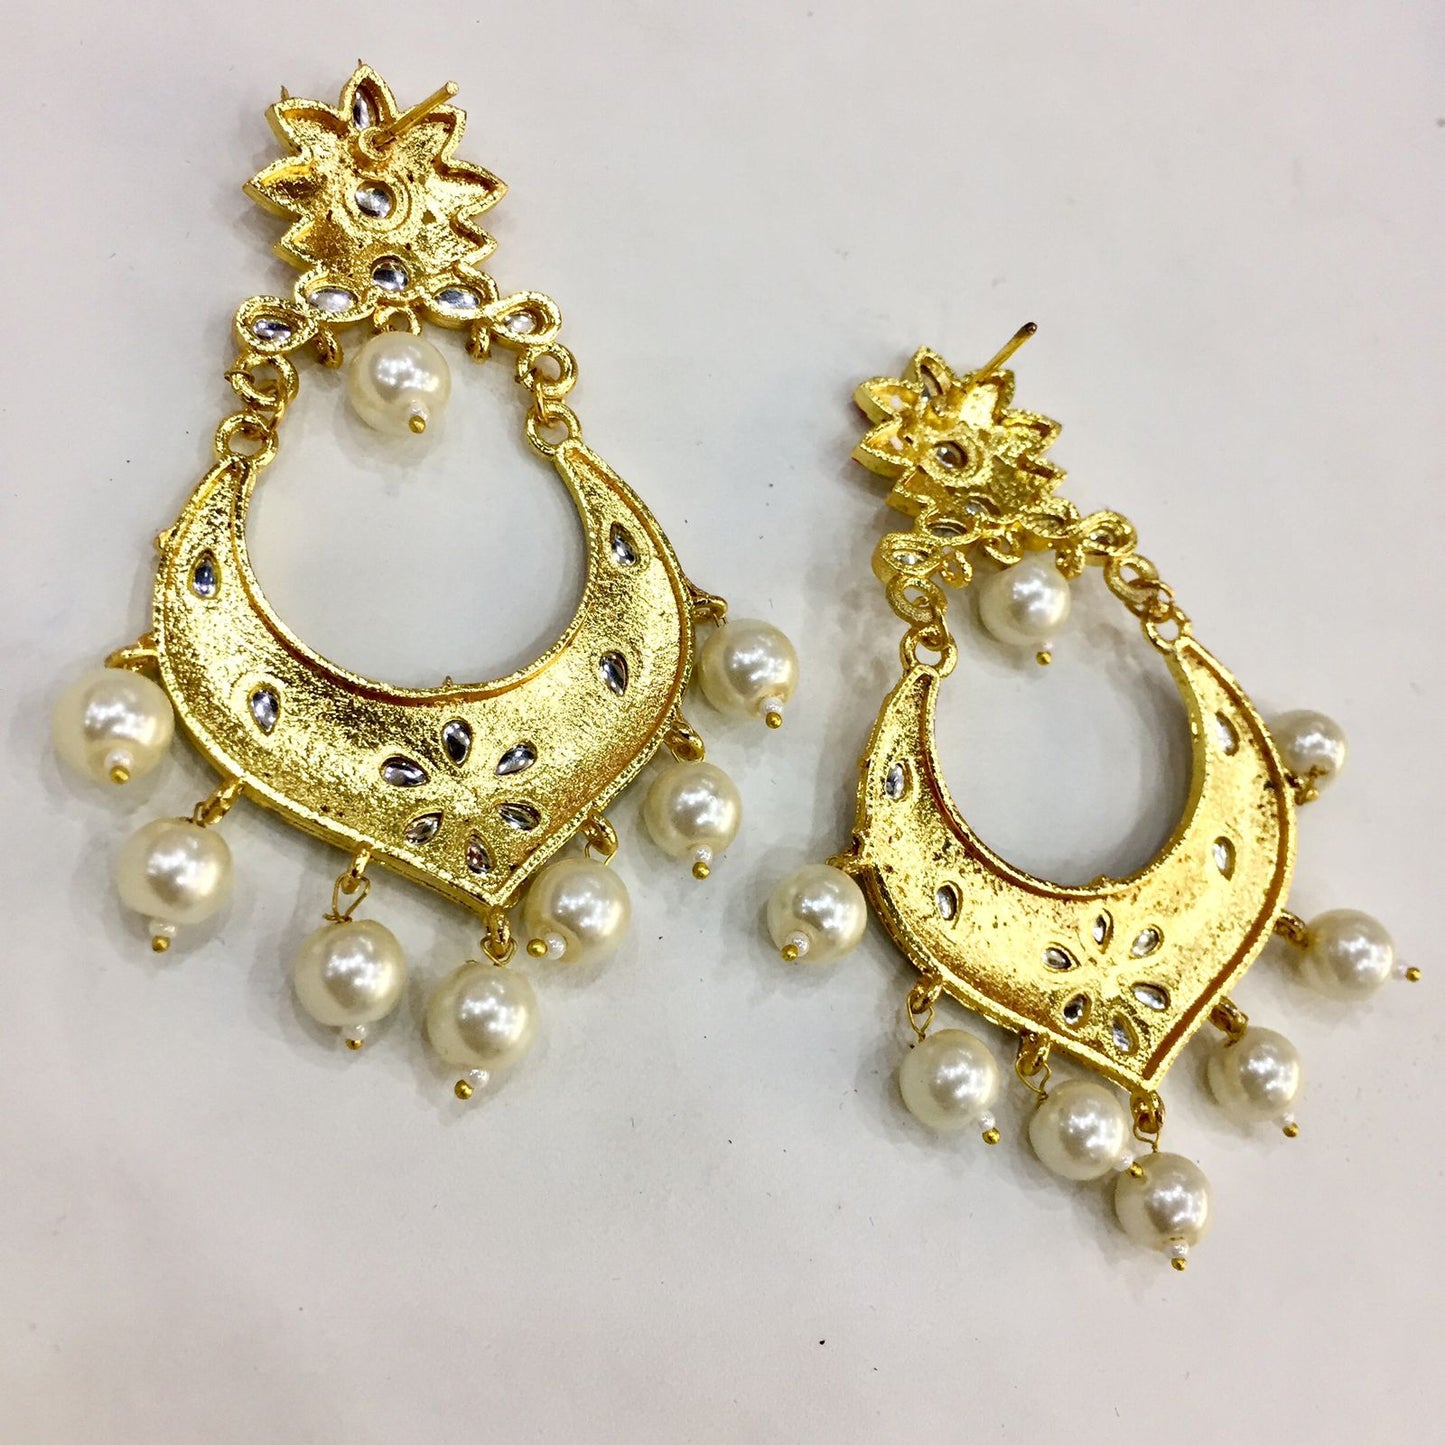 Antique earrings 8766